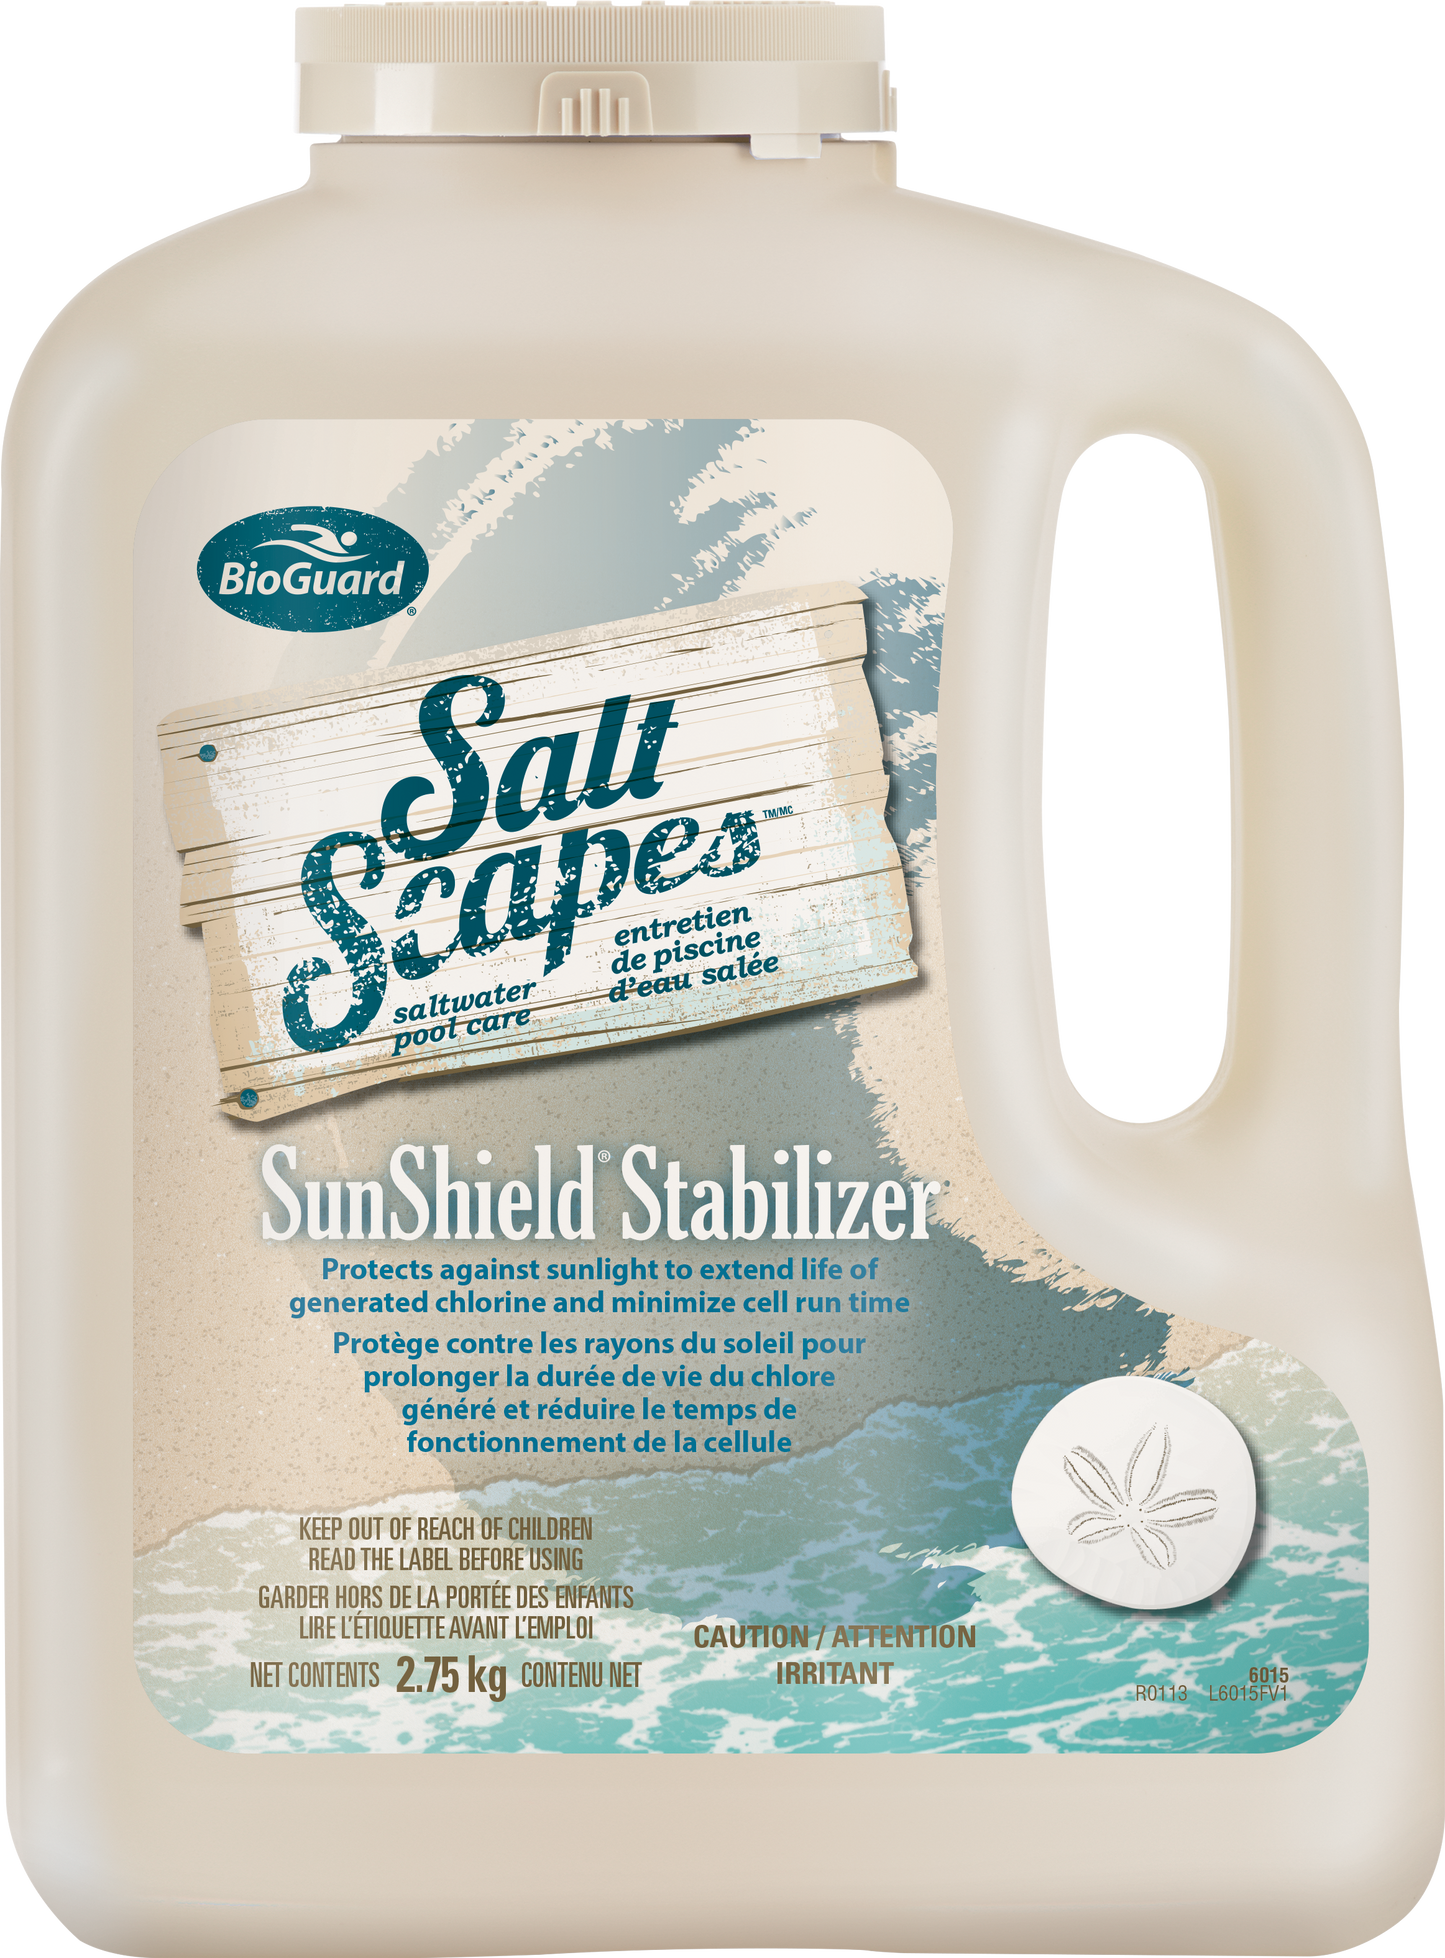 SaltScapes SunShield Stabilizer